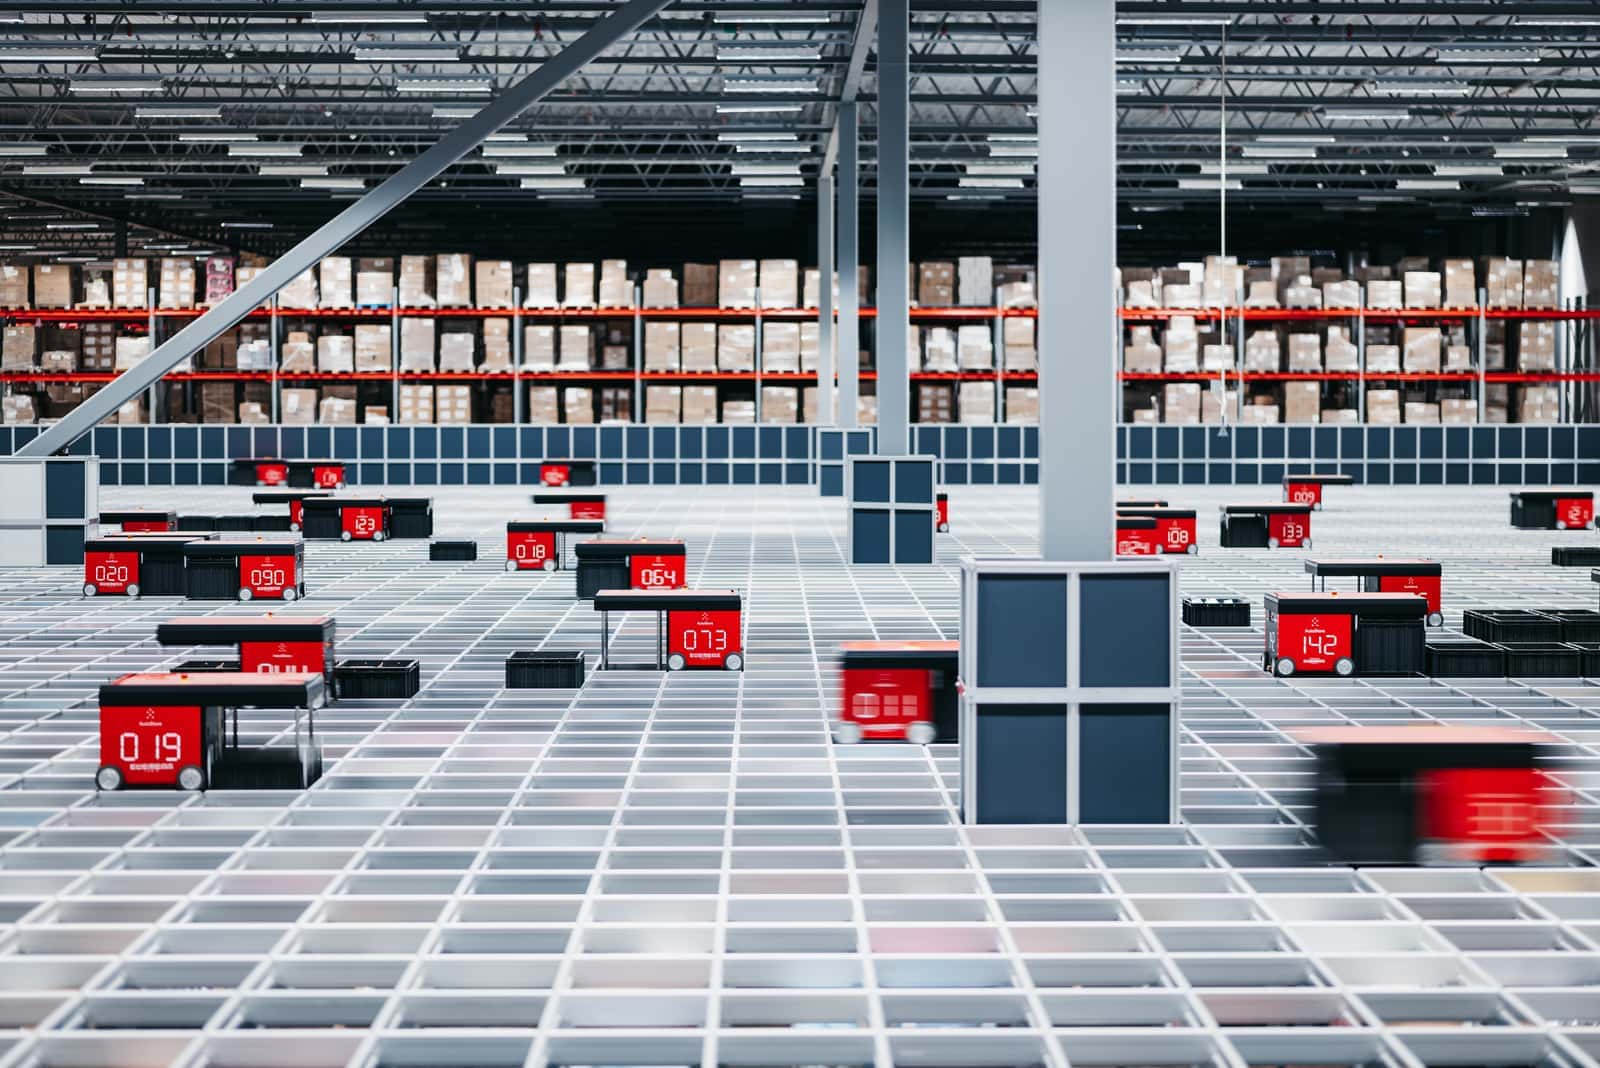 Robots desplazándose por la rejilla de aluminio de un almacén AutoStore, sistema para mejorar la eficiencia de picking